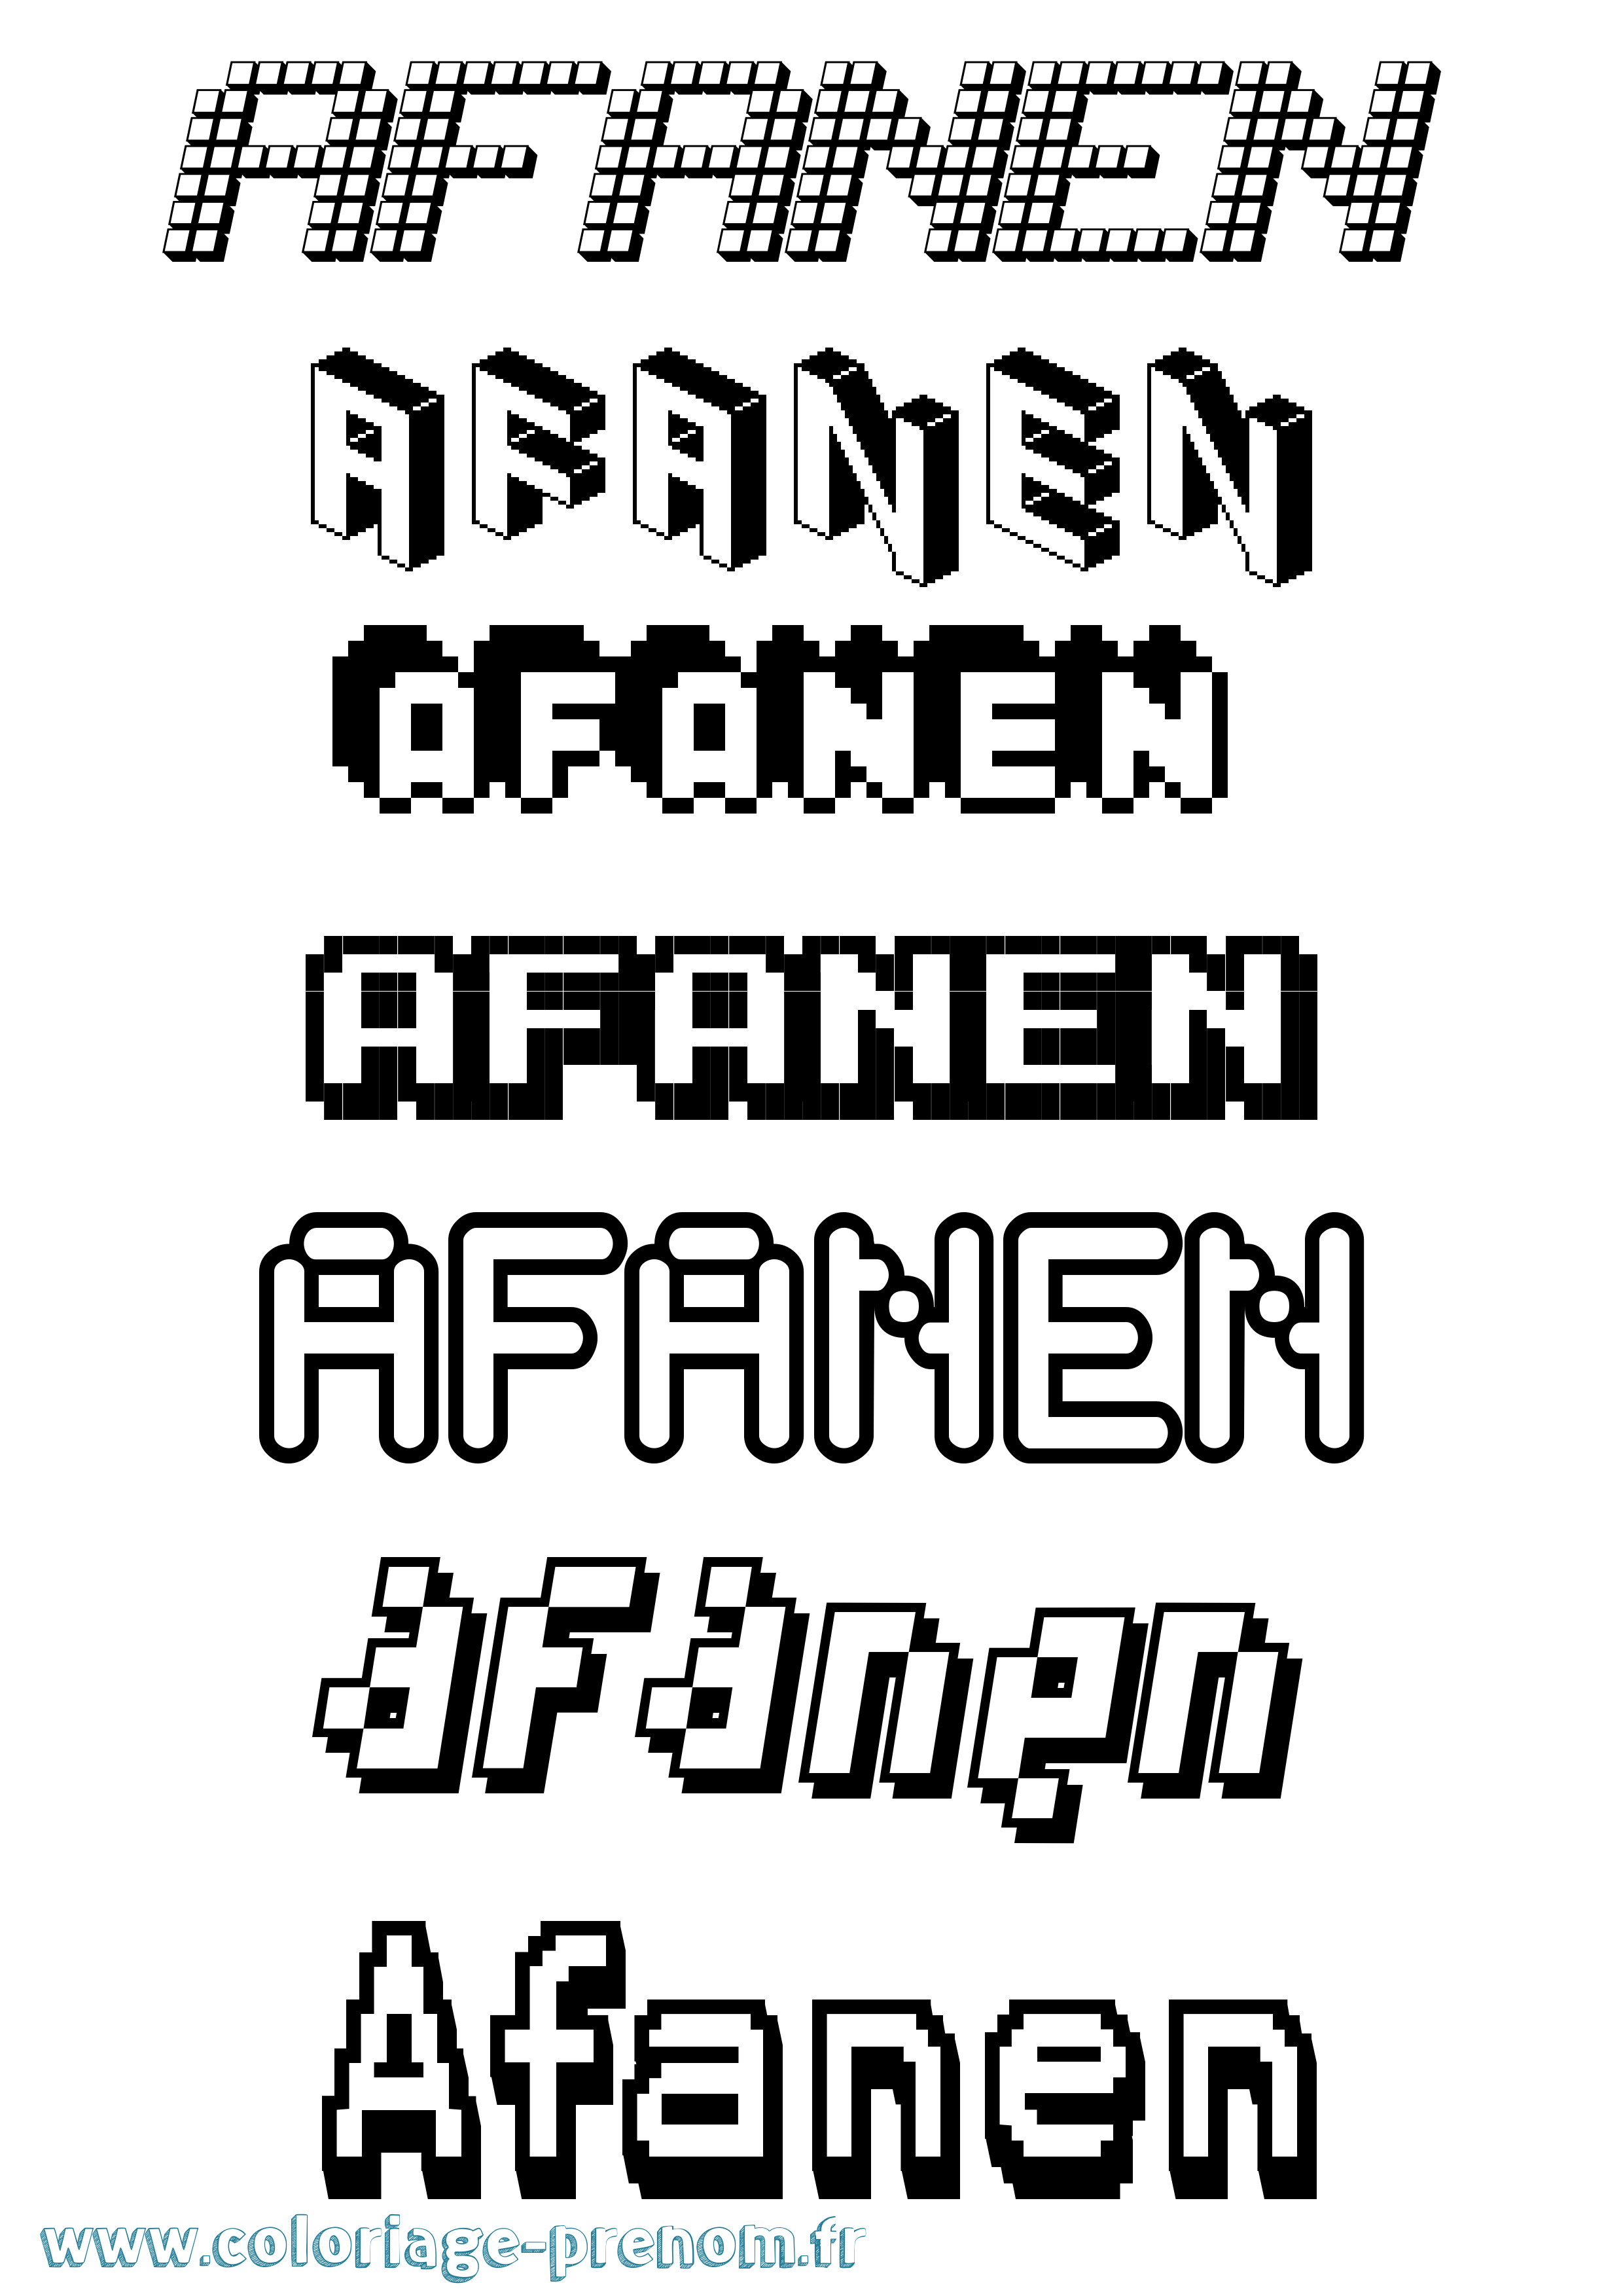 Coloriage prénom Afanen Pixel